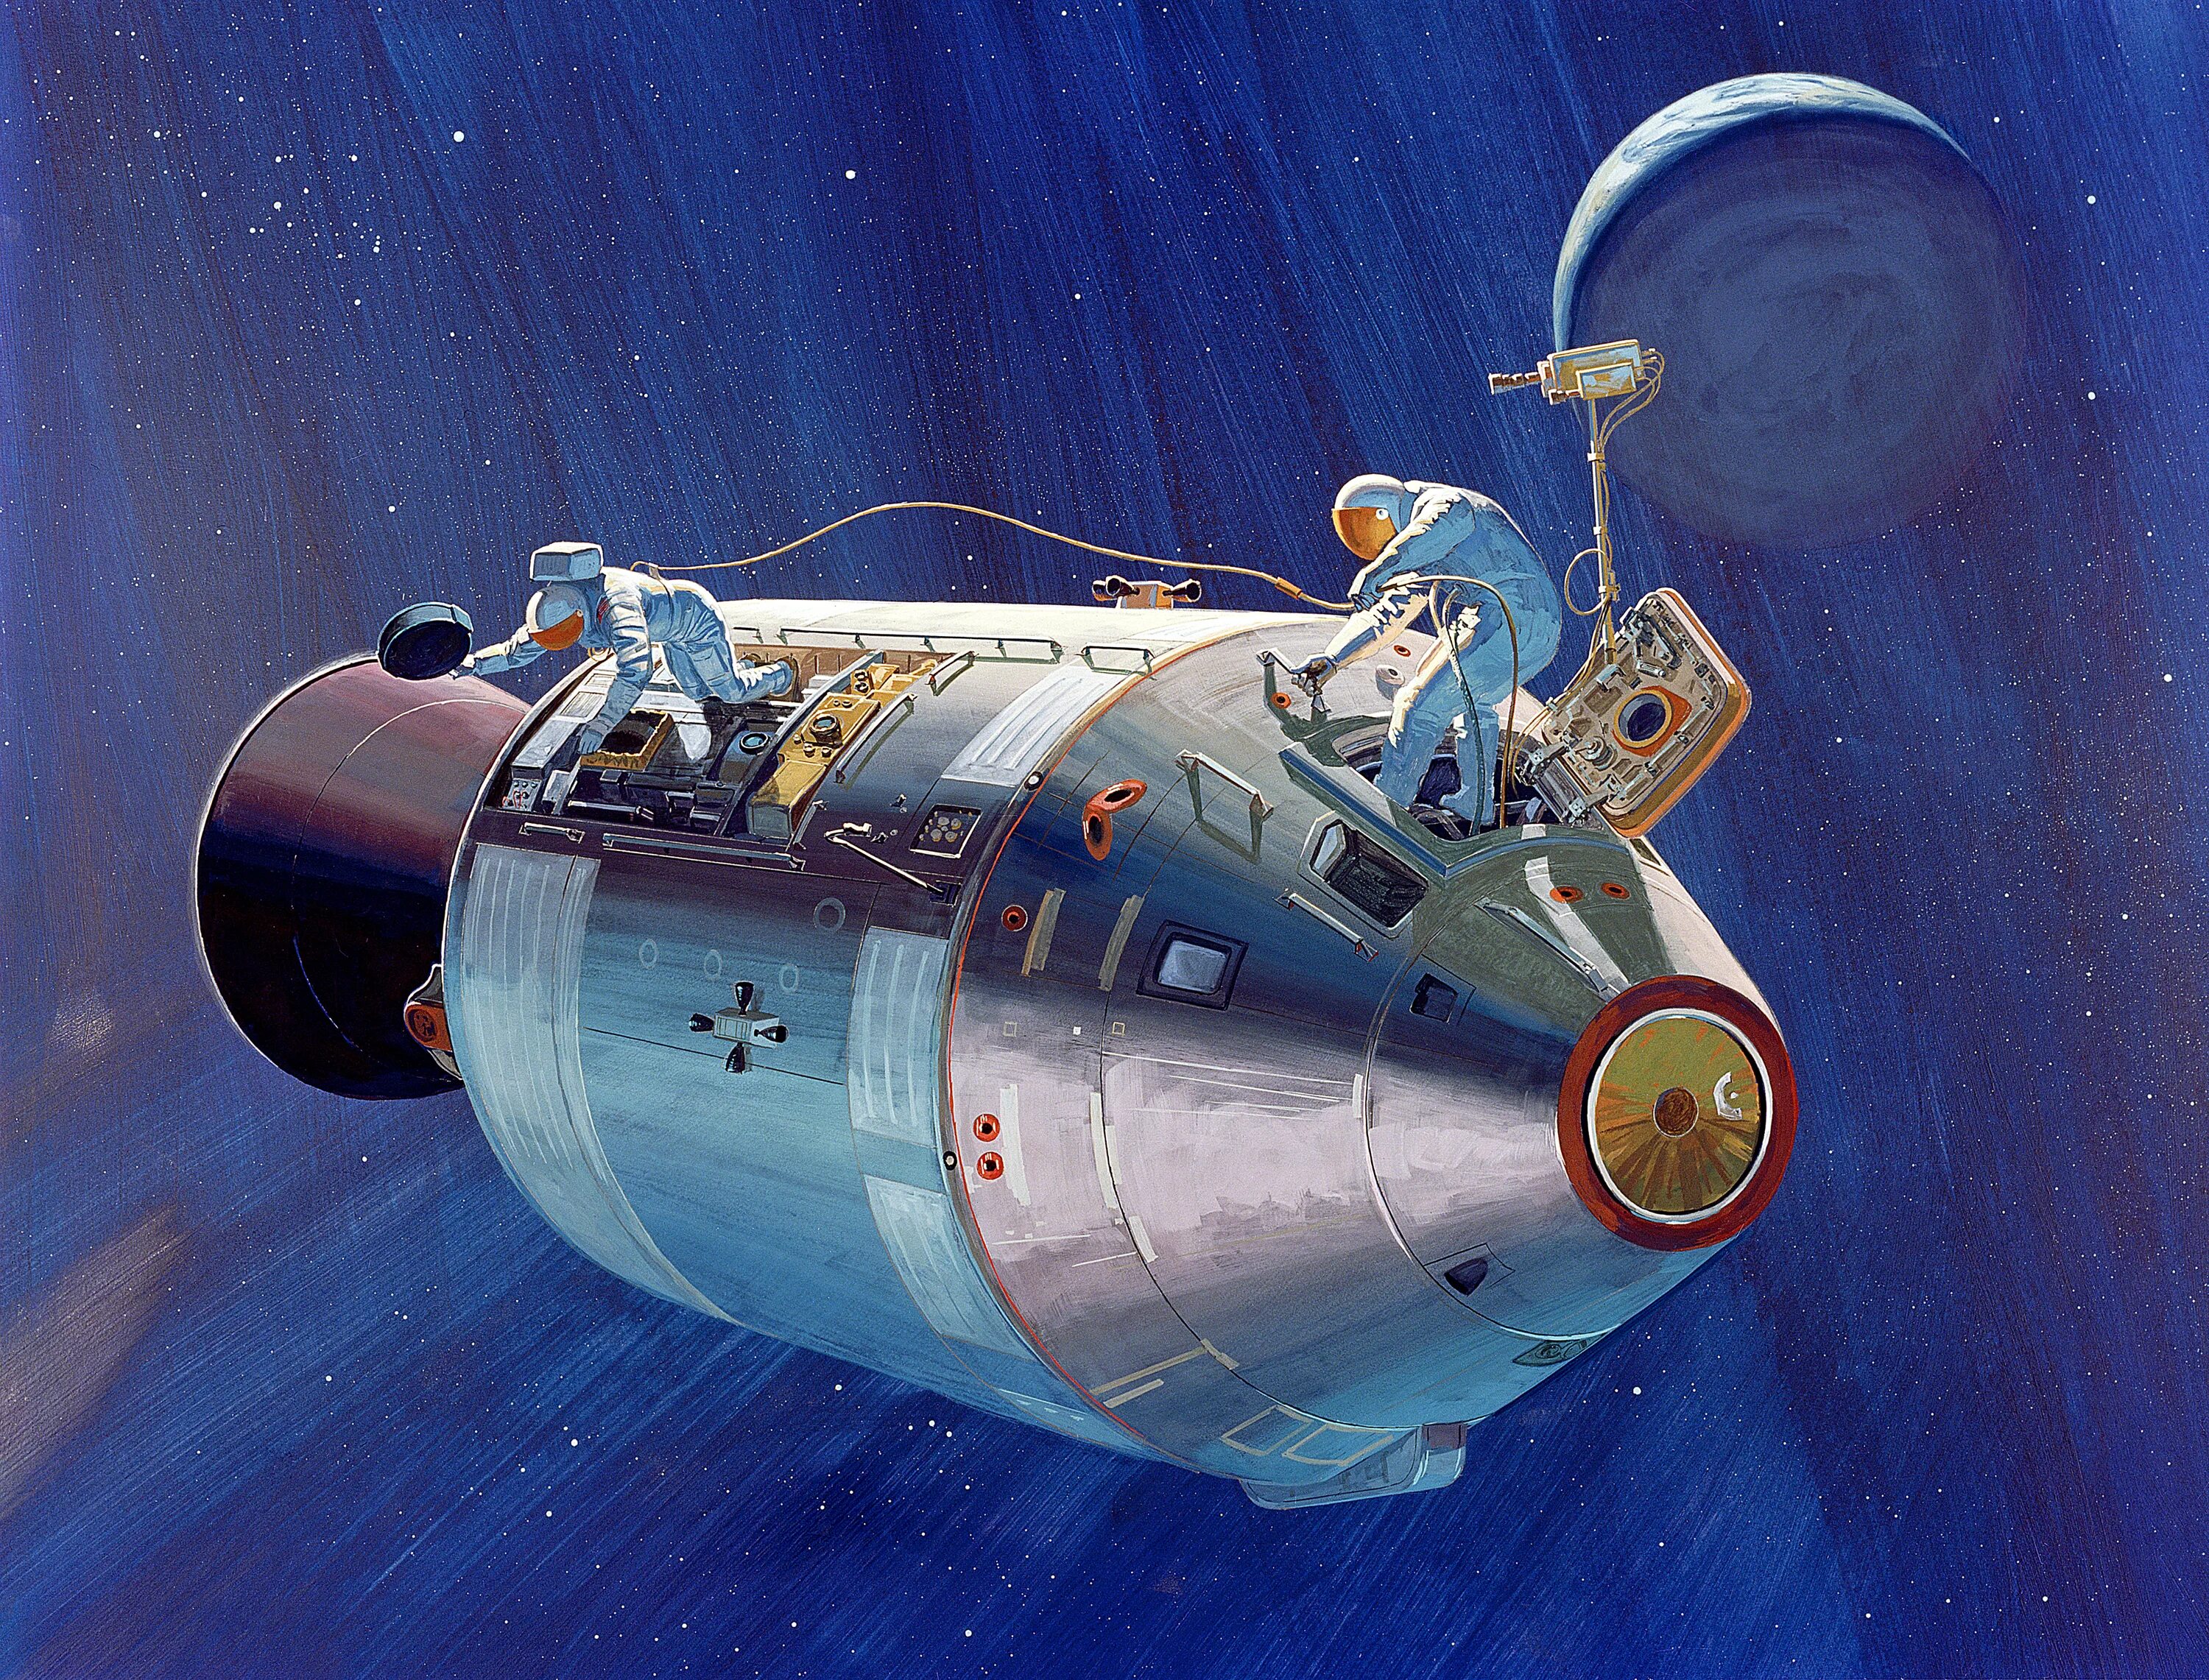 Как называется советский космический. Аполлон 13 космический корабль. Космический корабль Аполлон 15. Космический корабль Аполлон 11. Лунный модуль Аполлон 15.